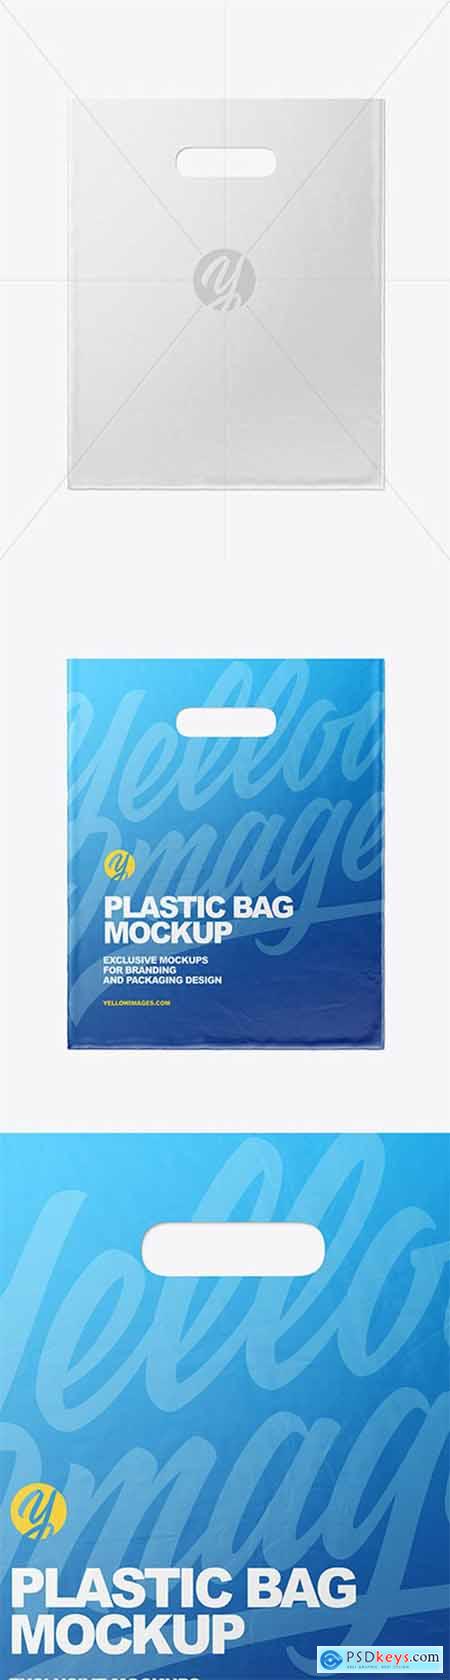 Plastic Carrier Bag Mockup 80480